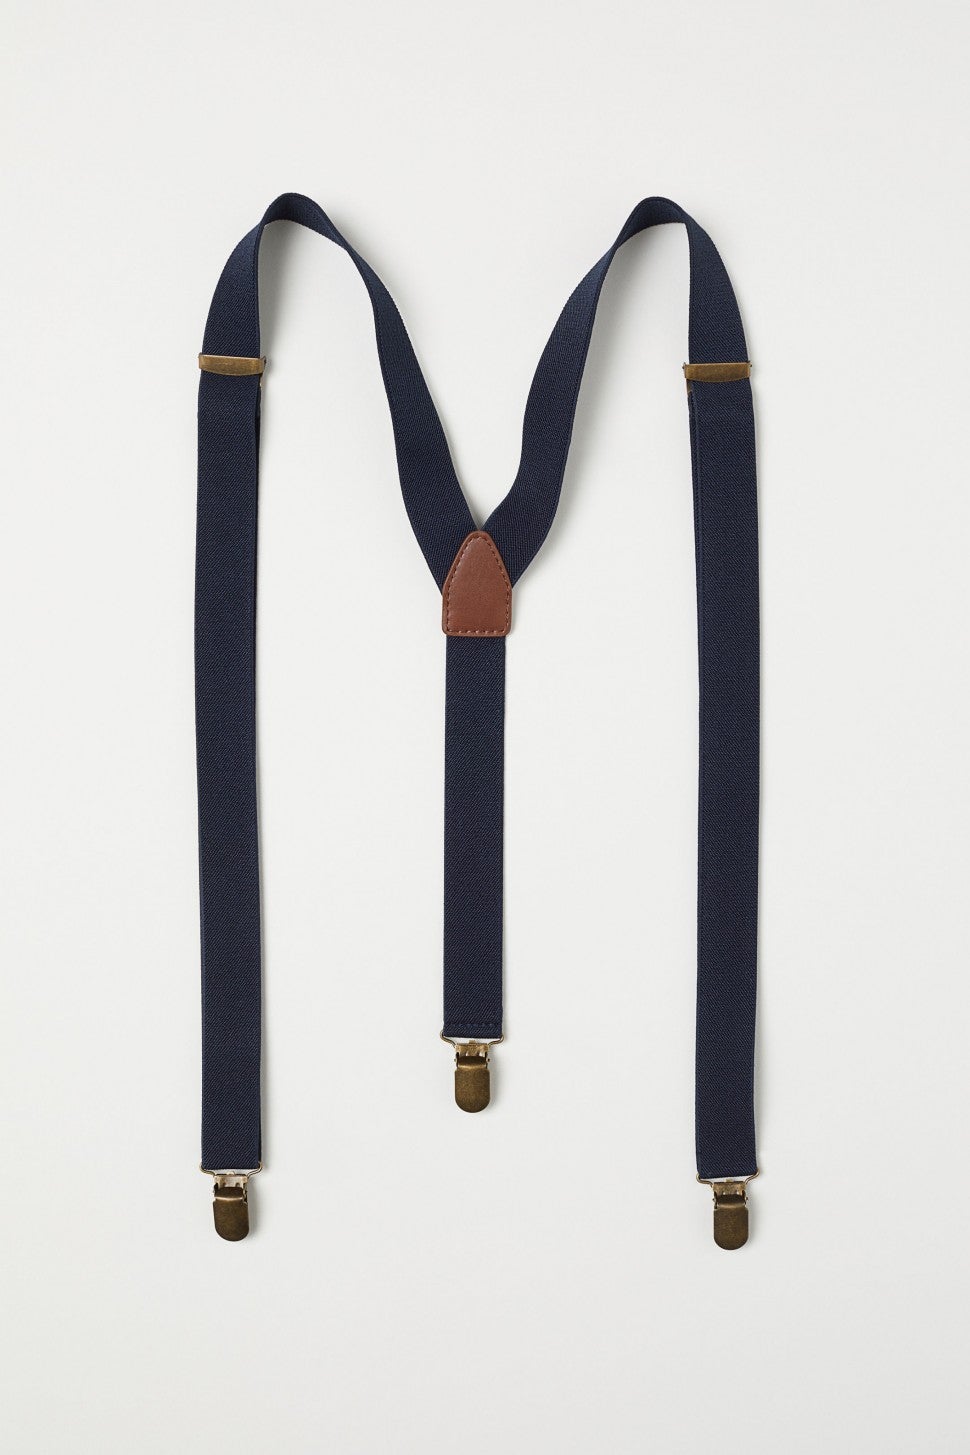 H&M suspenders